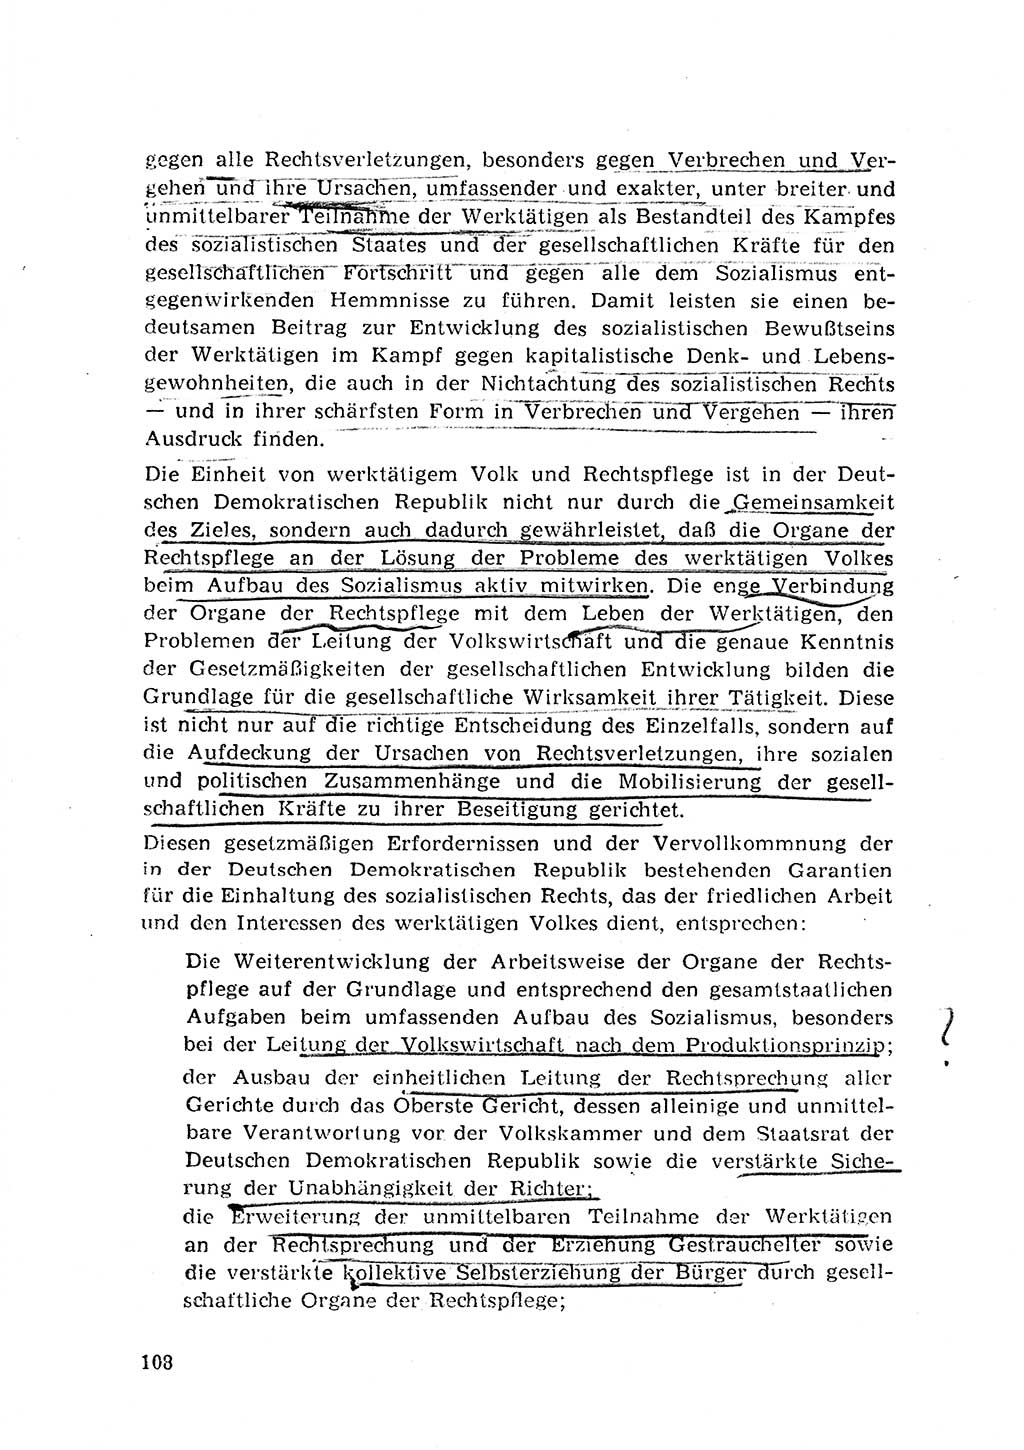 Rechtspflegeerlaß [Deutsche Demokratische Republik (DDR)] 1963, Seite 108 (R.-Pfl.-Erl. DDR 1963, S. 108)